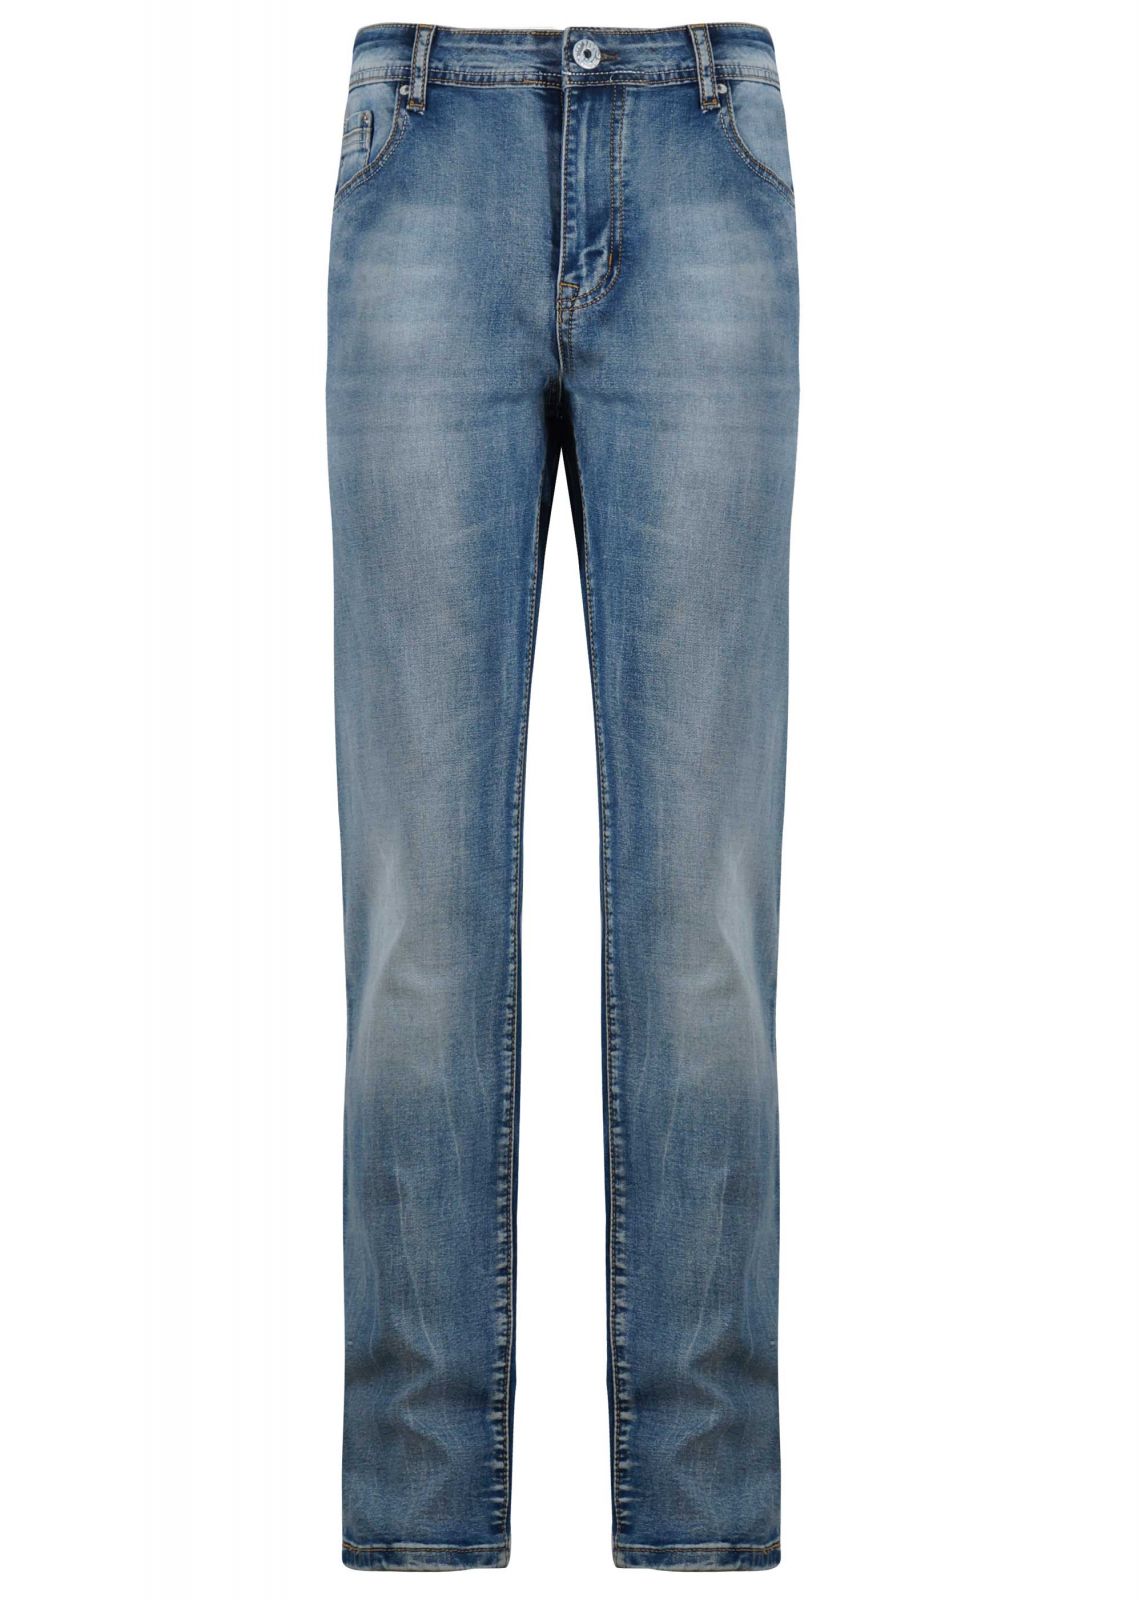 Ανδρικό παντελόνι jean ξεβάμματα ίσια γραμμή. Denim plus-size Collection.